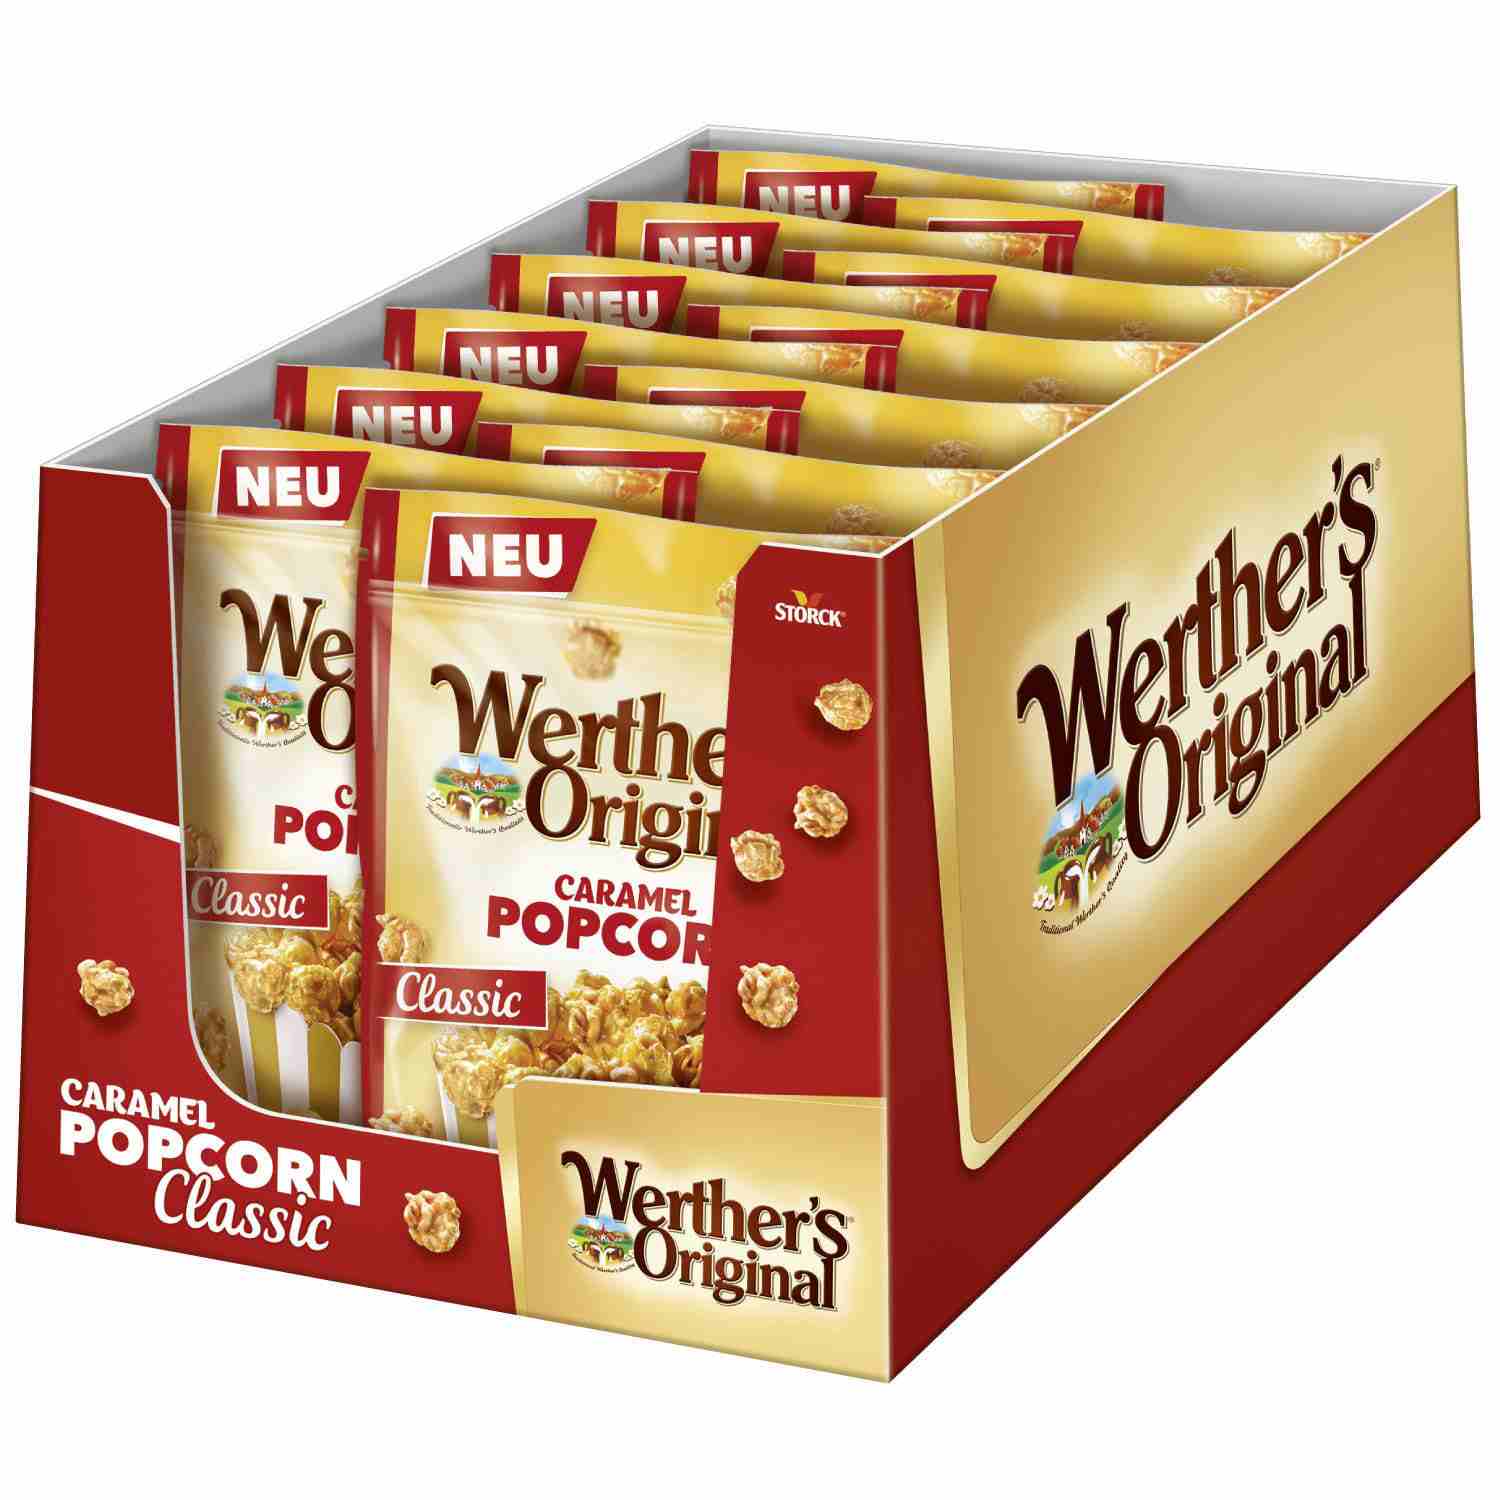 Karmelowy Popcorn Werther's Storck 140g z Niemiec